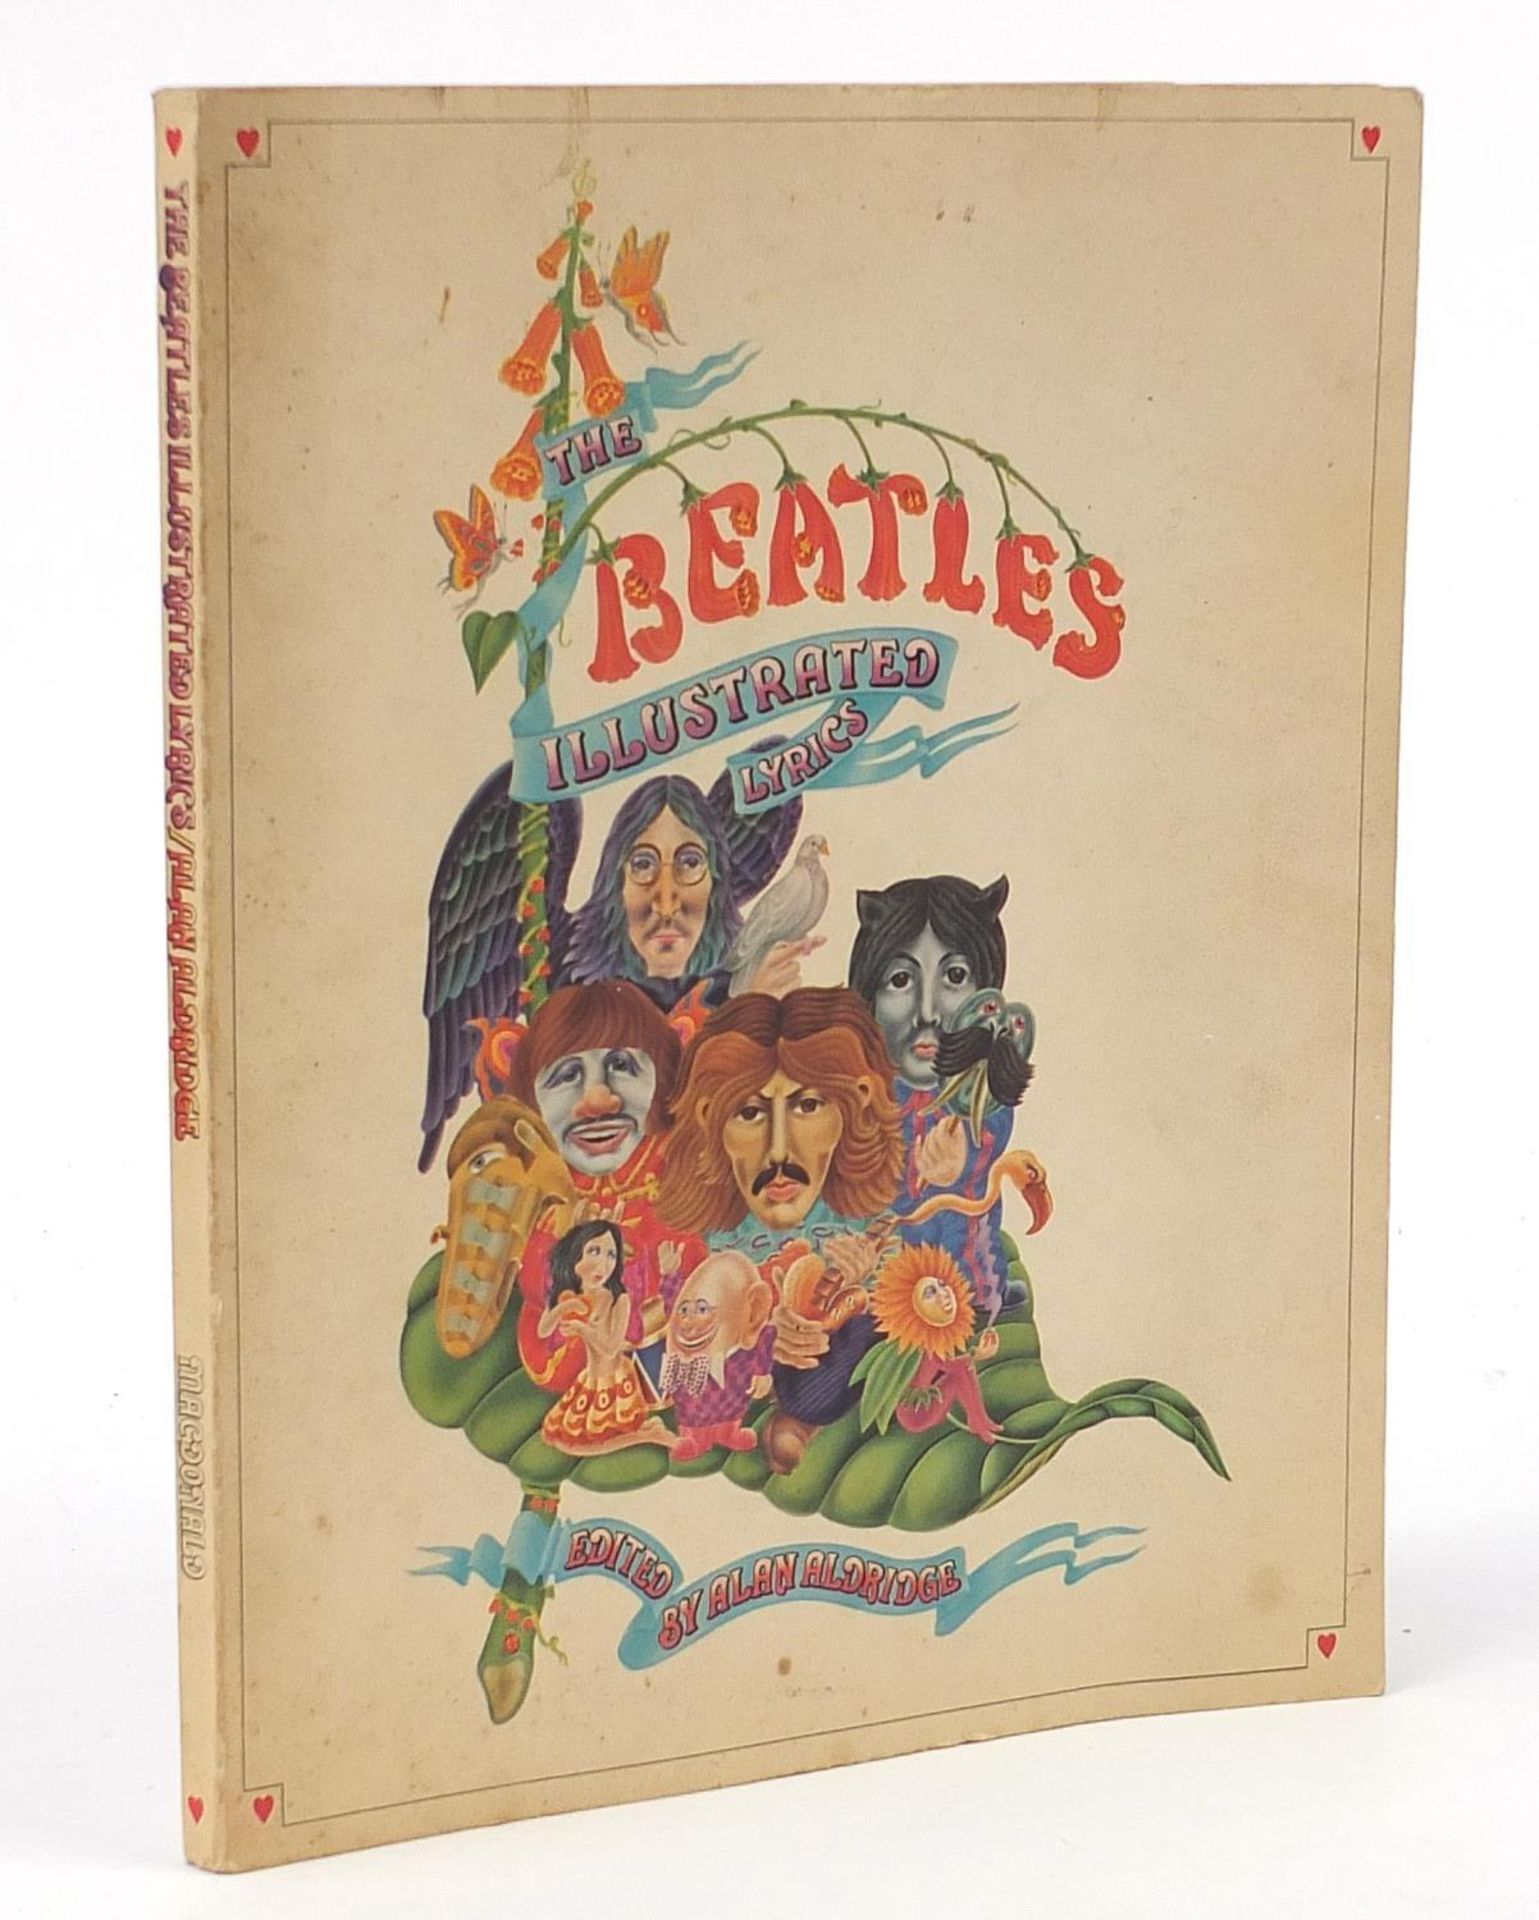 Vintage Beatles illustrated lyrics booklet edited by Alan Aldridge